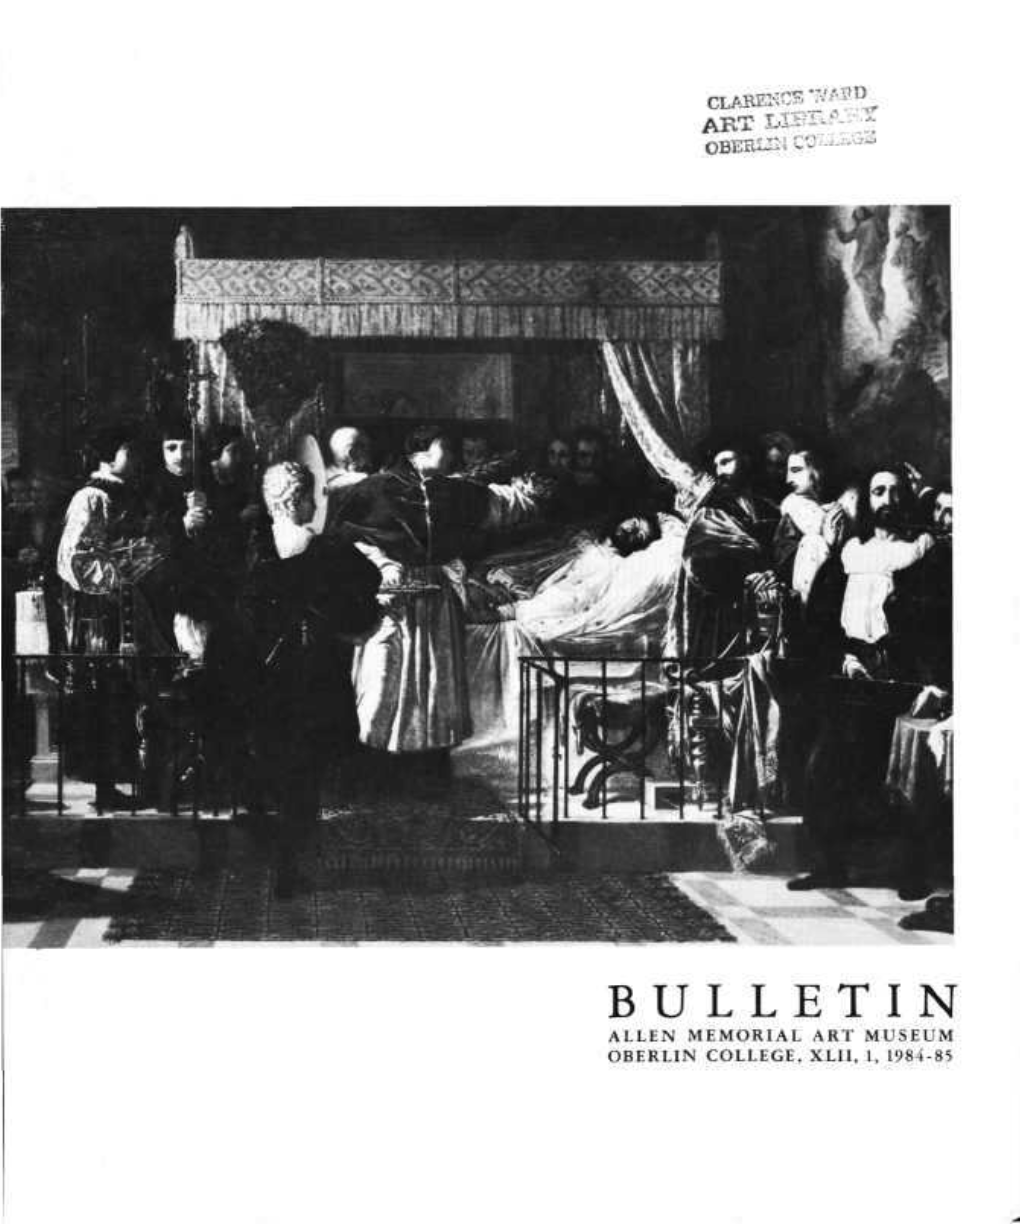 Bulletin Allen Memorial Art Museum Oberlin College, Xlii, 1, 1984-85